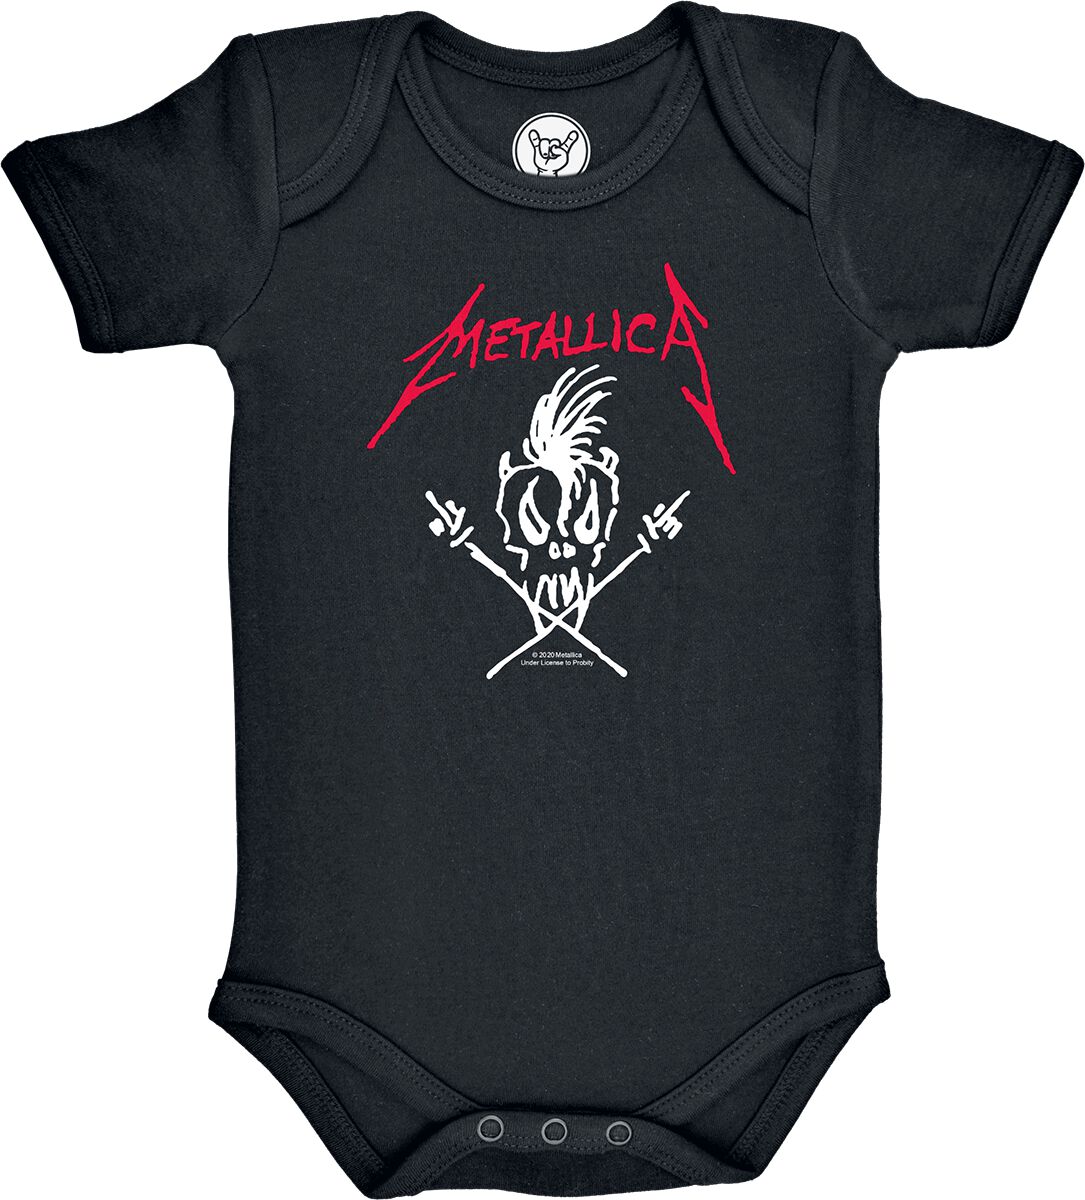 Metallica Body für Neugeborene - Metal-Kids - Scary Guy - für Mädchen & Jungen - schwarz  - Lizenziertes Merchandise!